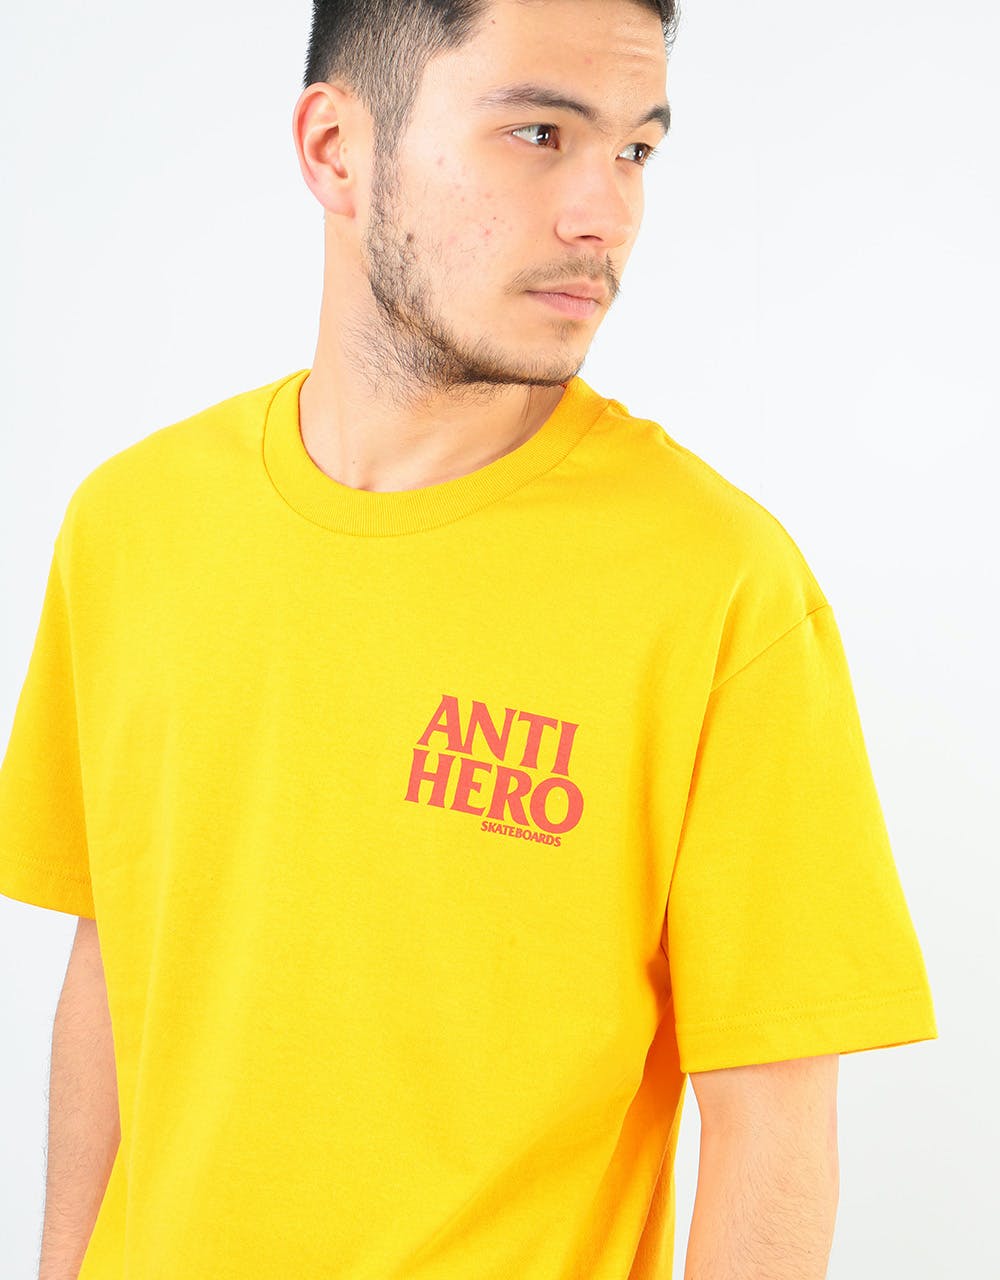 Anti Hero Black Hero T-Shirt - Gold/Red